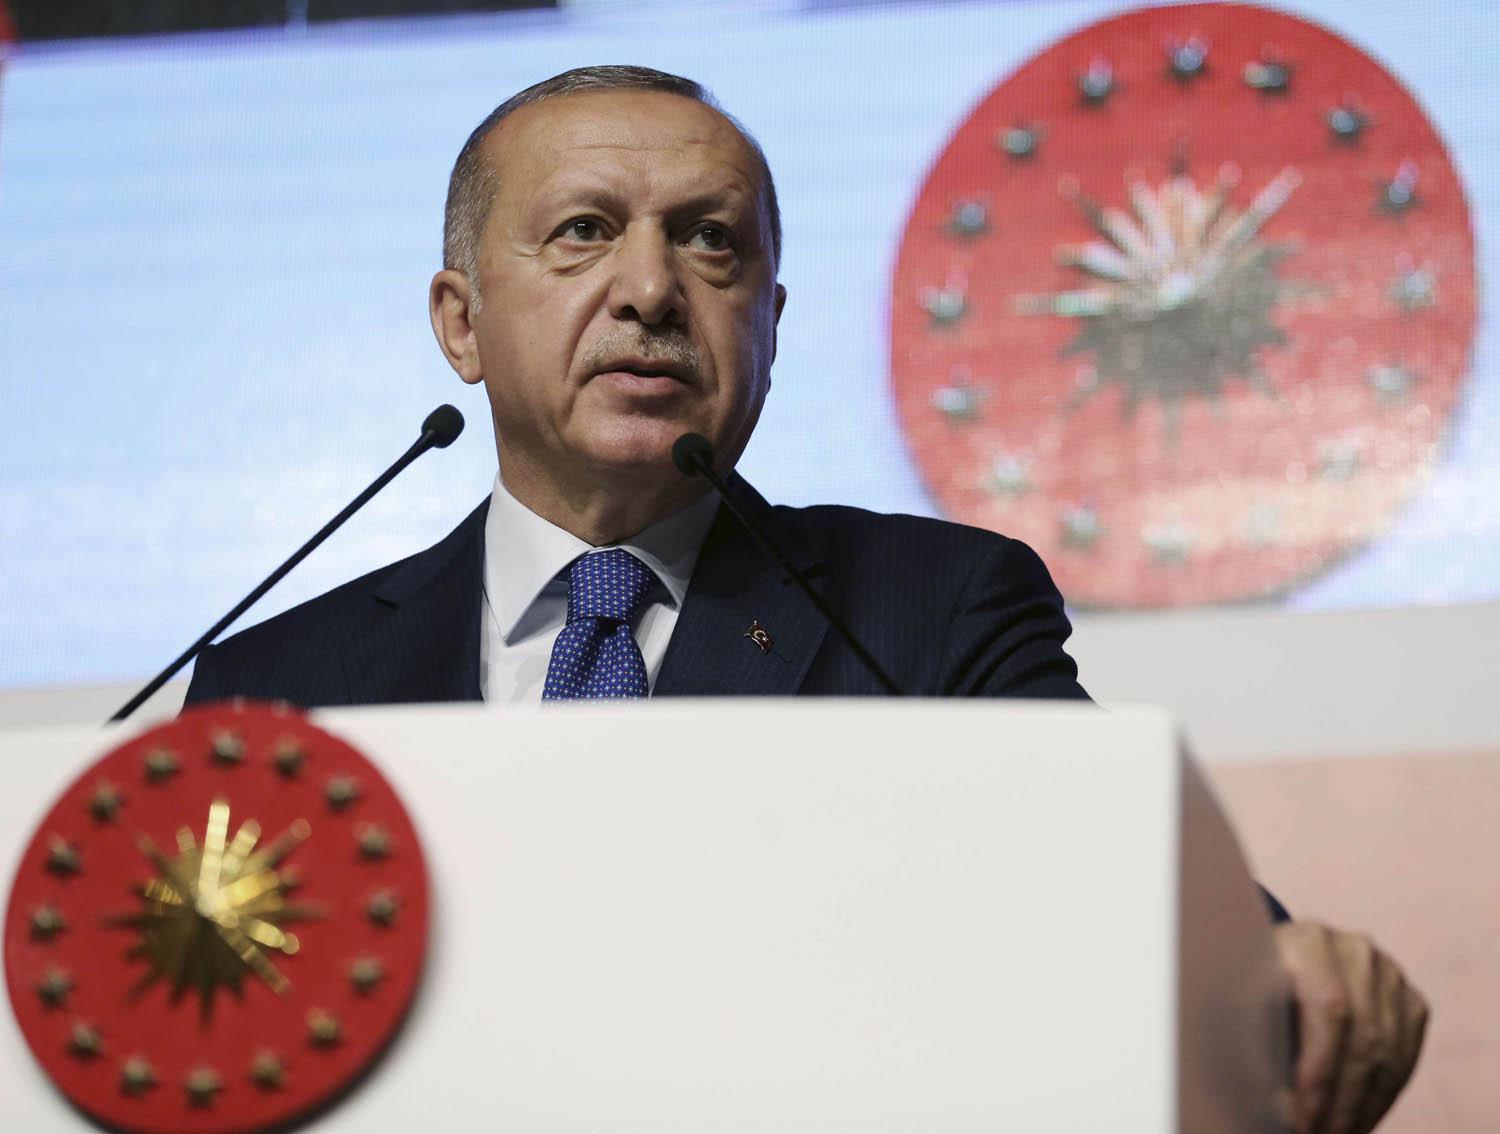 الرئيس التركي رجب طيب أردوغان يتحدث إلى حضور في مدرسة دينية عن تركيا التي يريدها